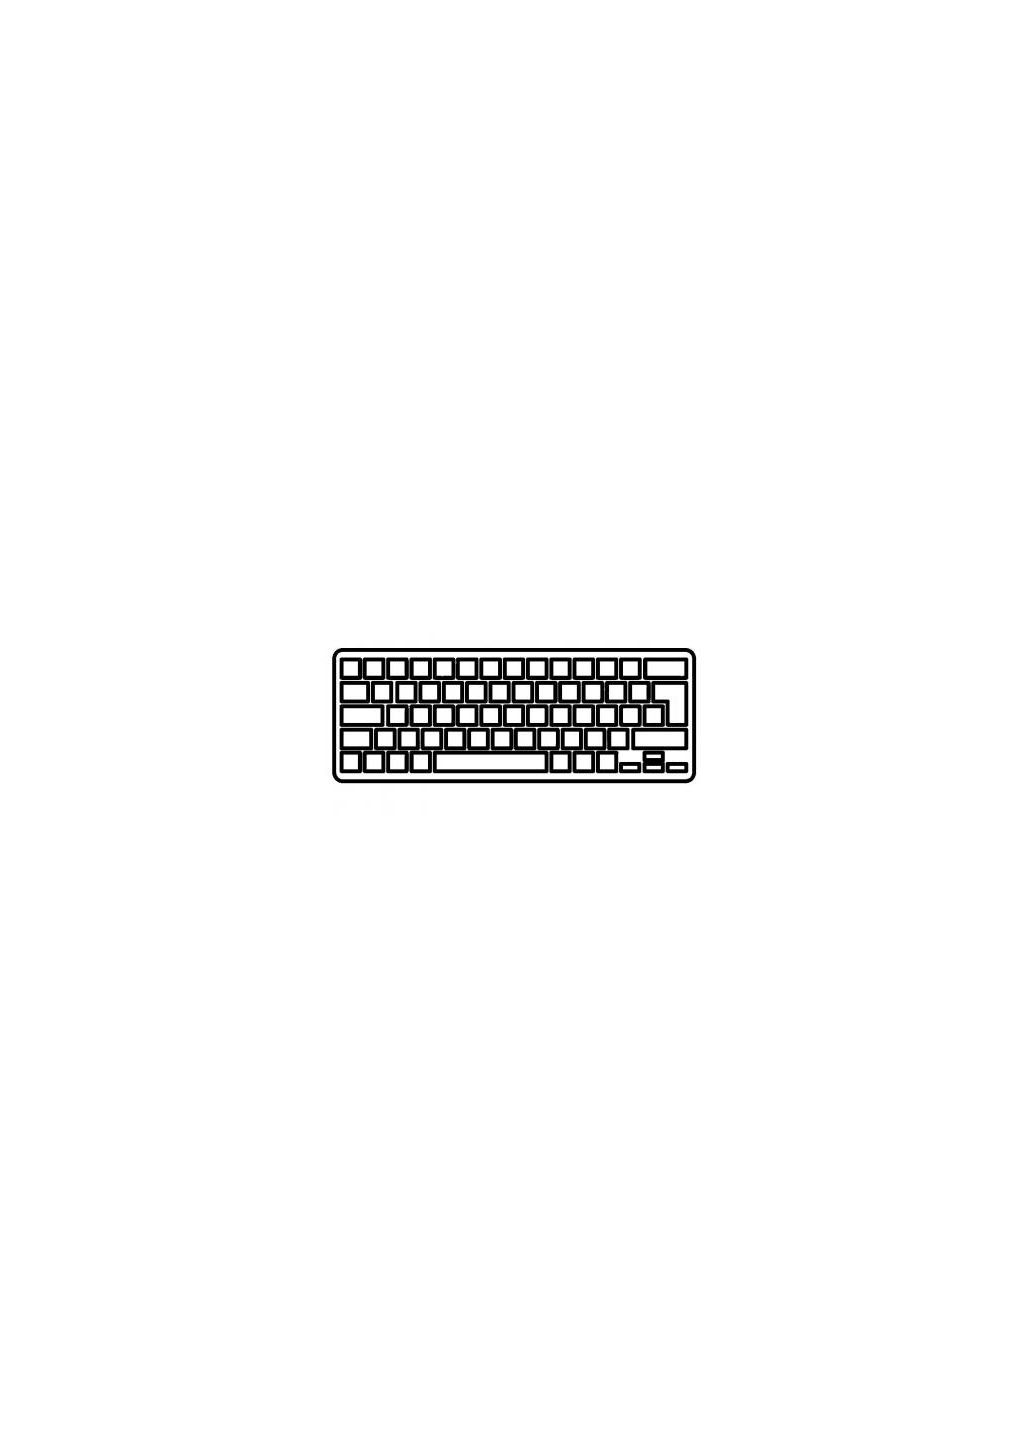 Клавиатура ноутбука (A43317) Dell latitude xt/xt2 series черная ru (276708054)